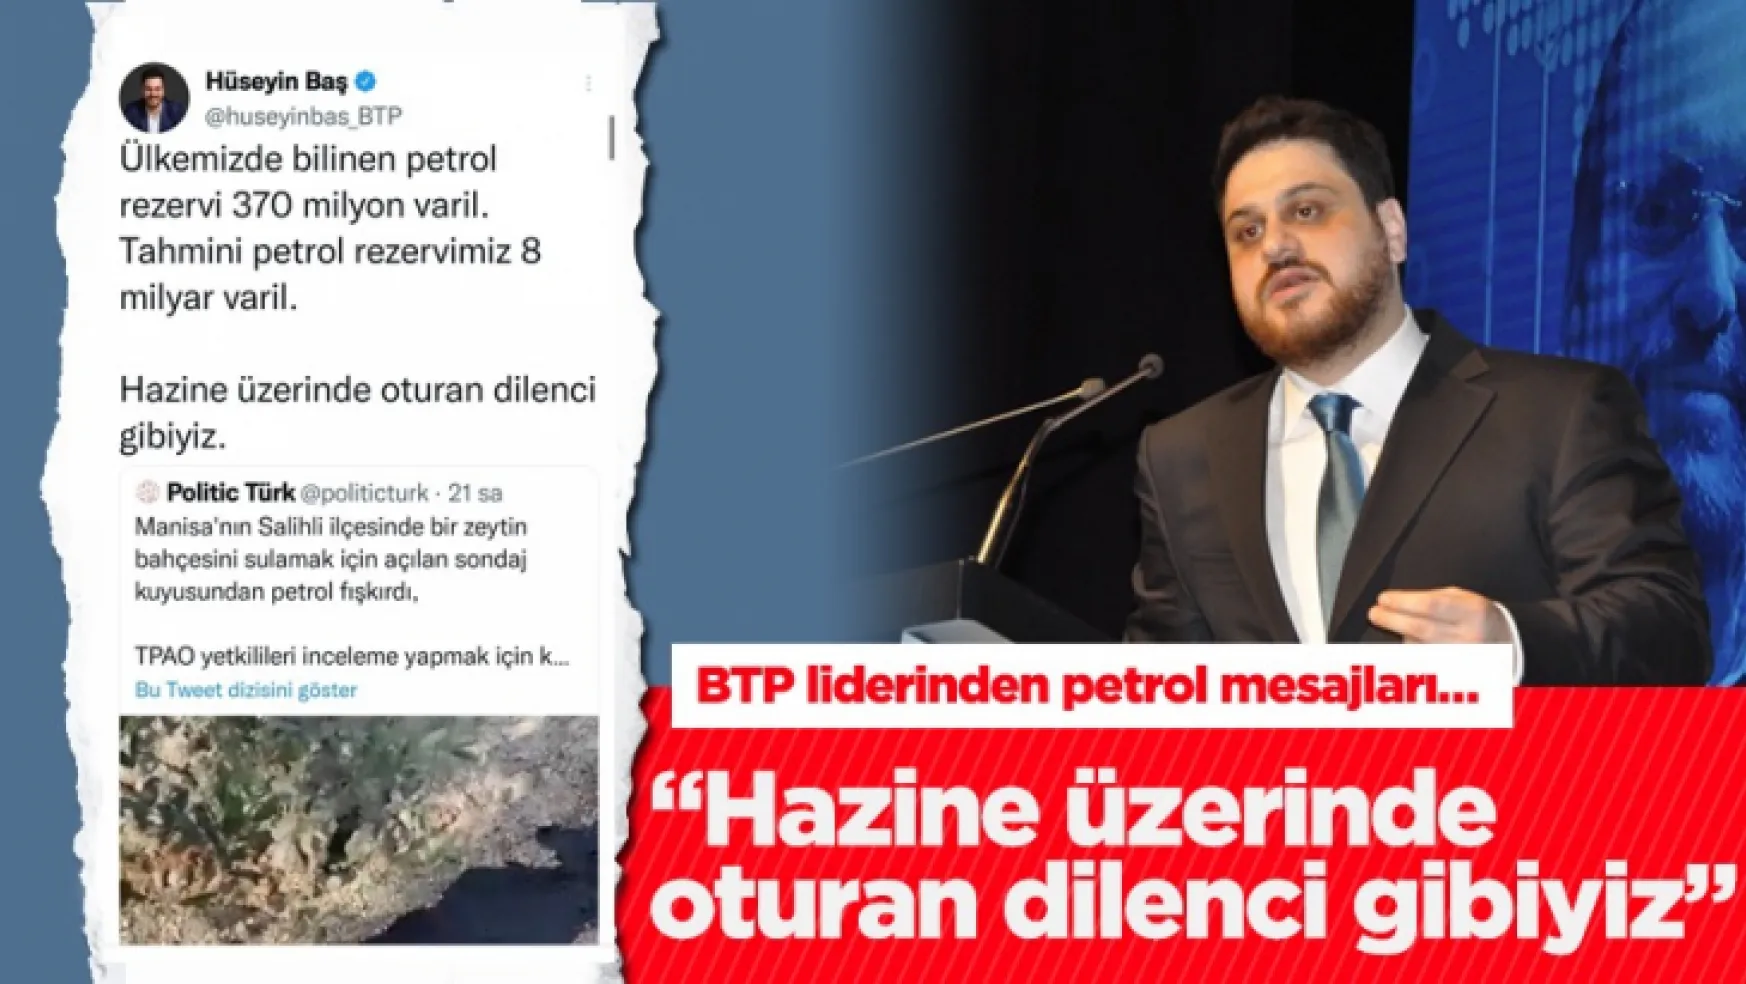 BTP Genel Başkanı Hüseyin Baş'tan Türkiye'nin petrol varlığı üzerine açıklamalar…